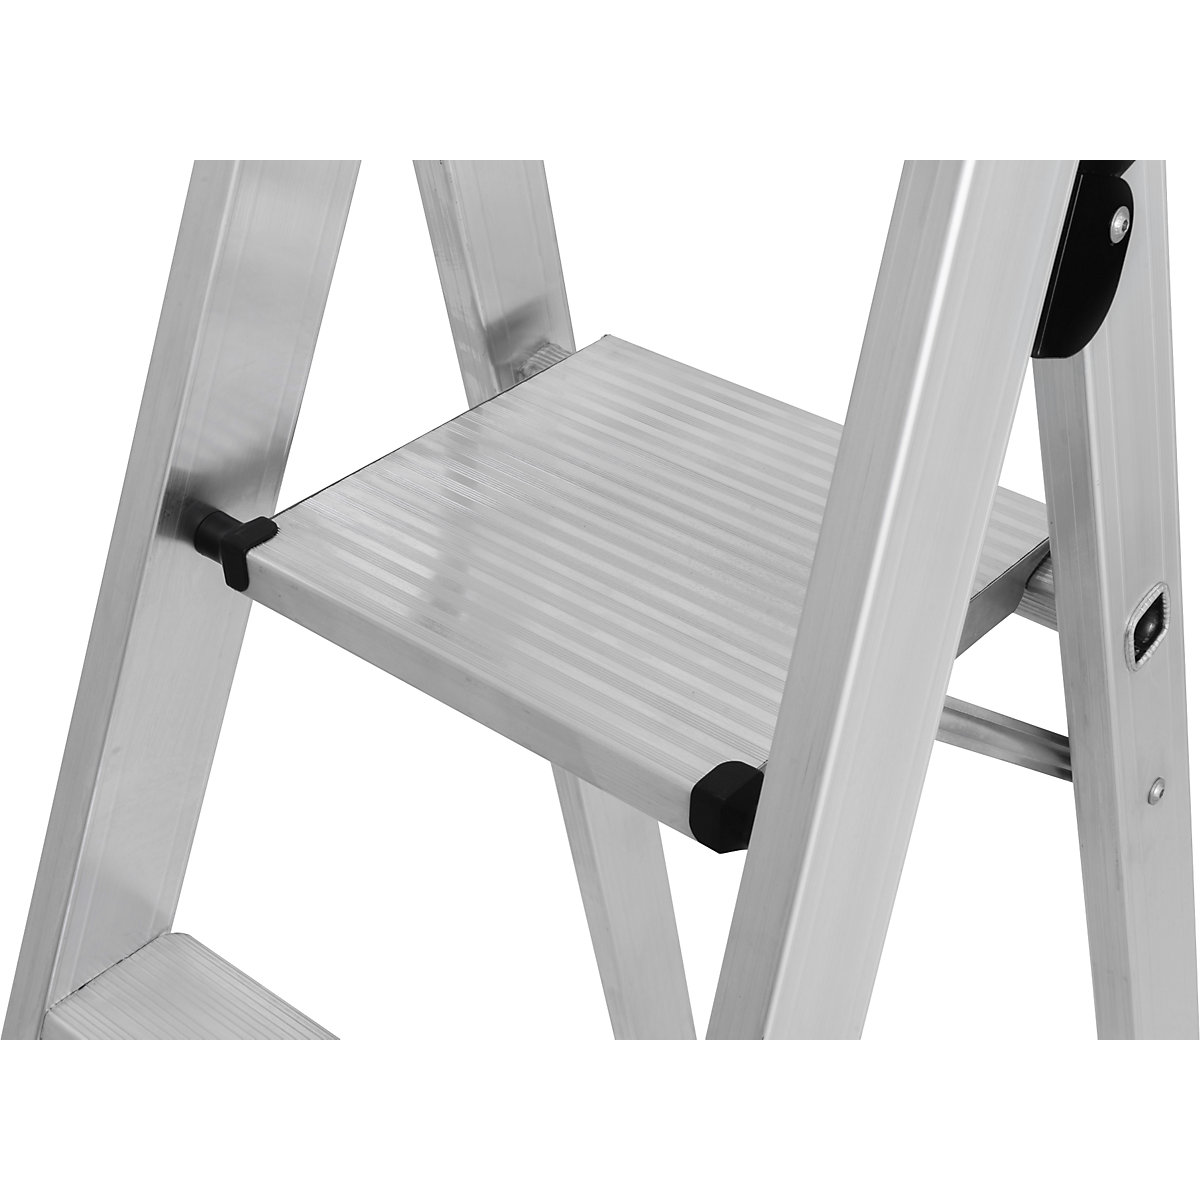 Escalera de tijera para cargas pesadas – KRAUSE (Imagen del producto 8)-7